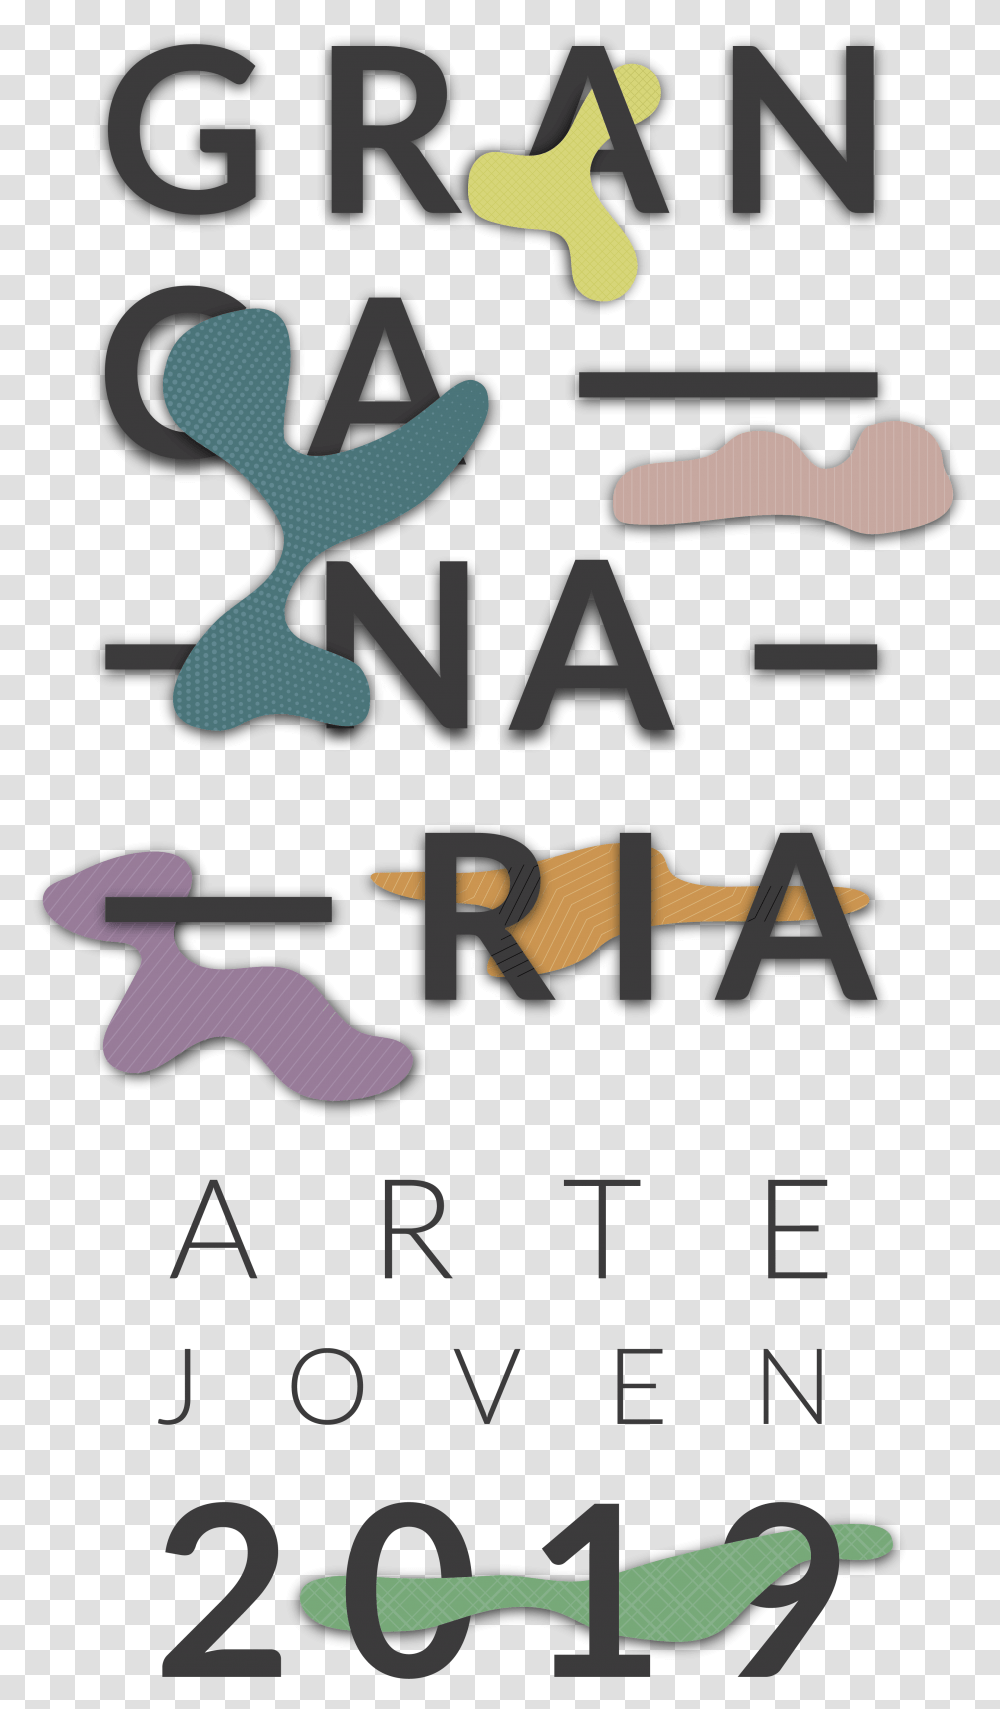 Chatear Las Palmas De Gran Canaria Trabajo Verano Concurso Arte Joven Gran Canaria 2019, Poster, Alphabet, Label Transparent Png